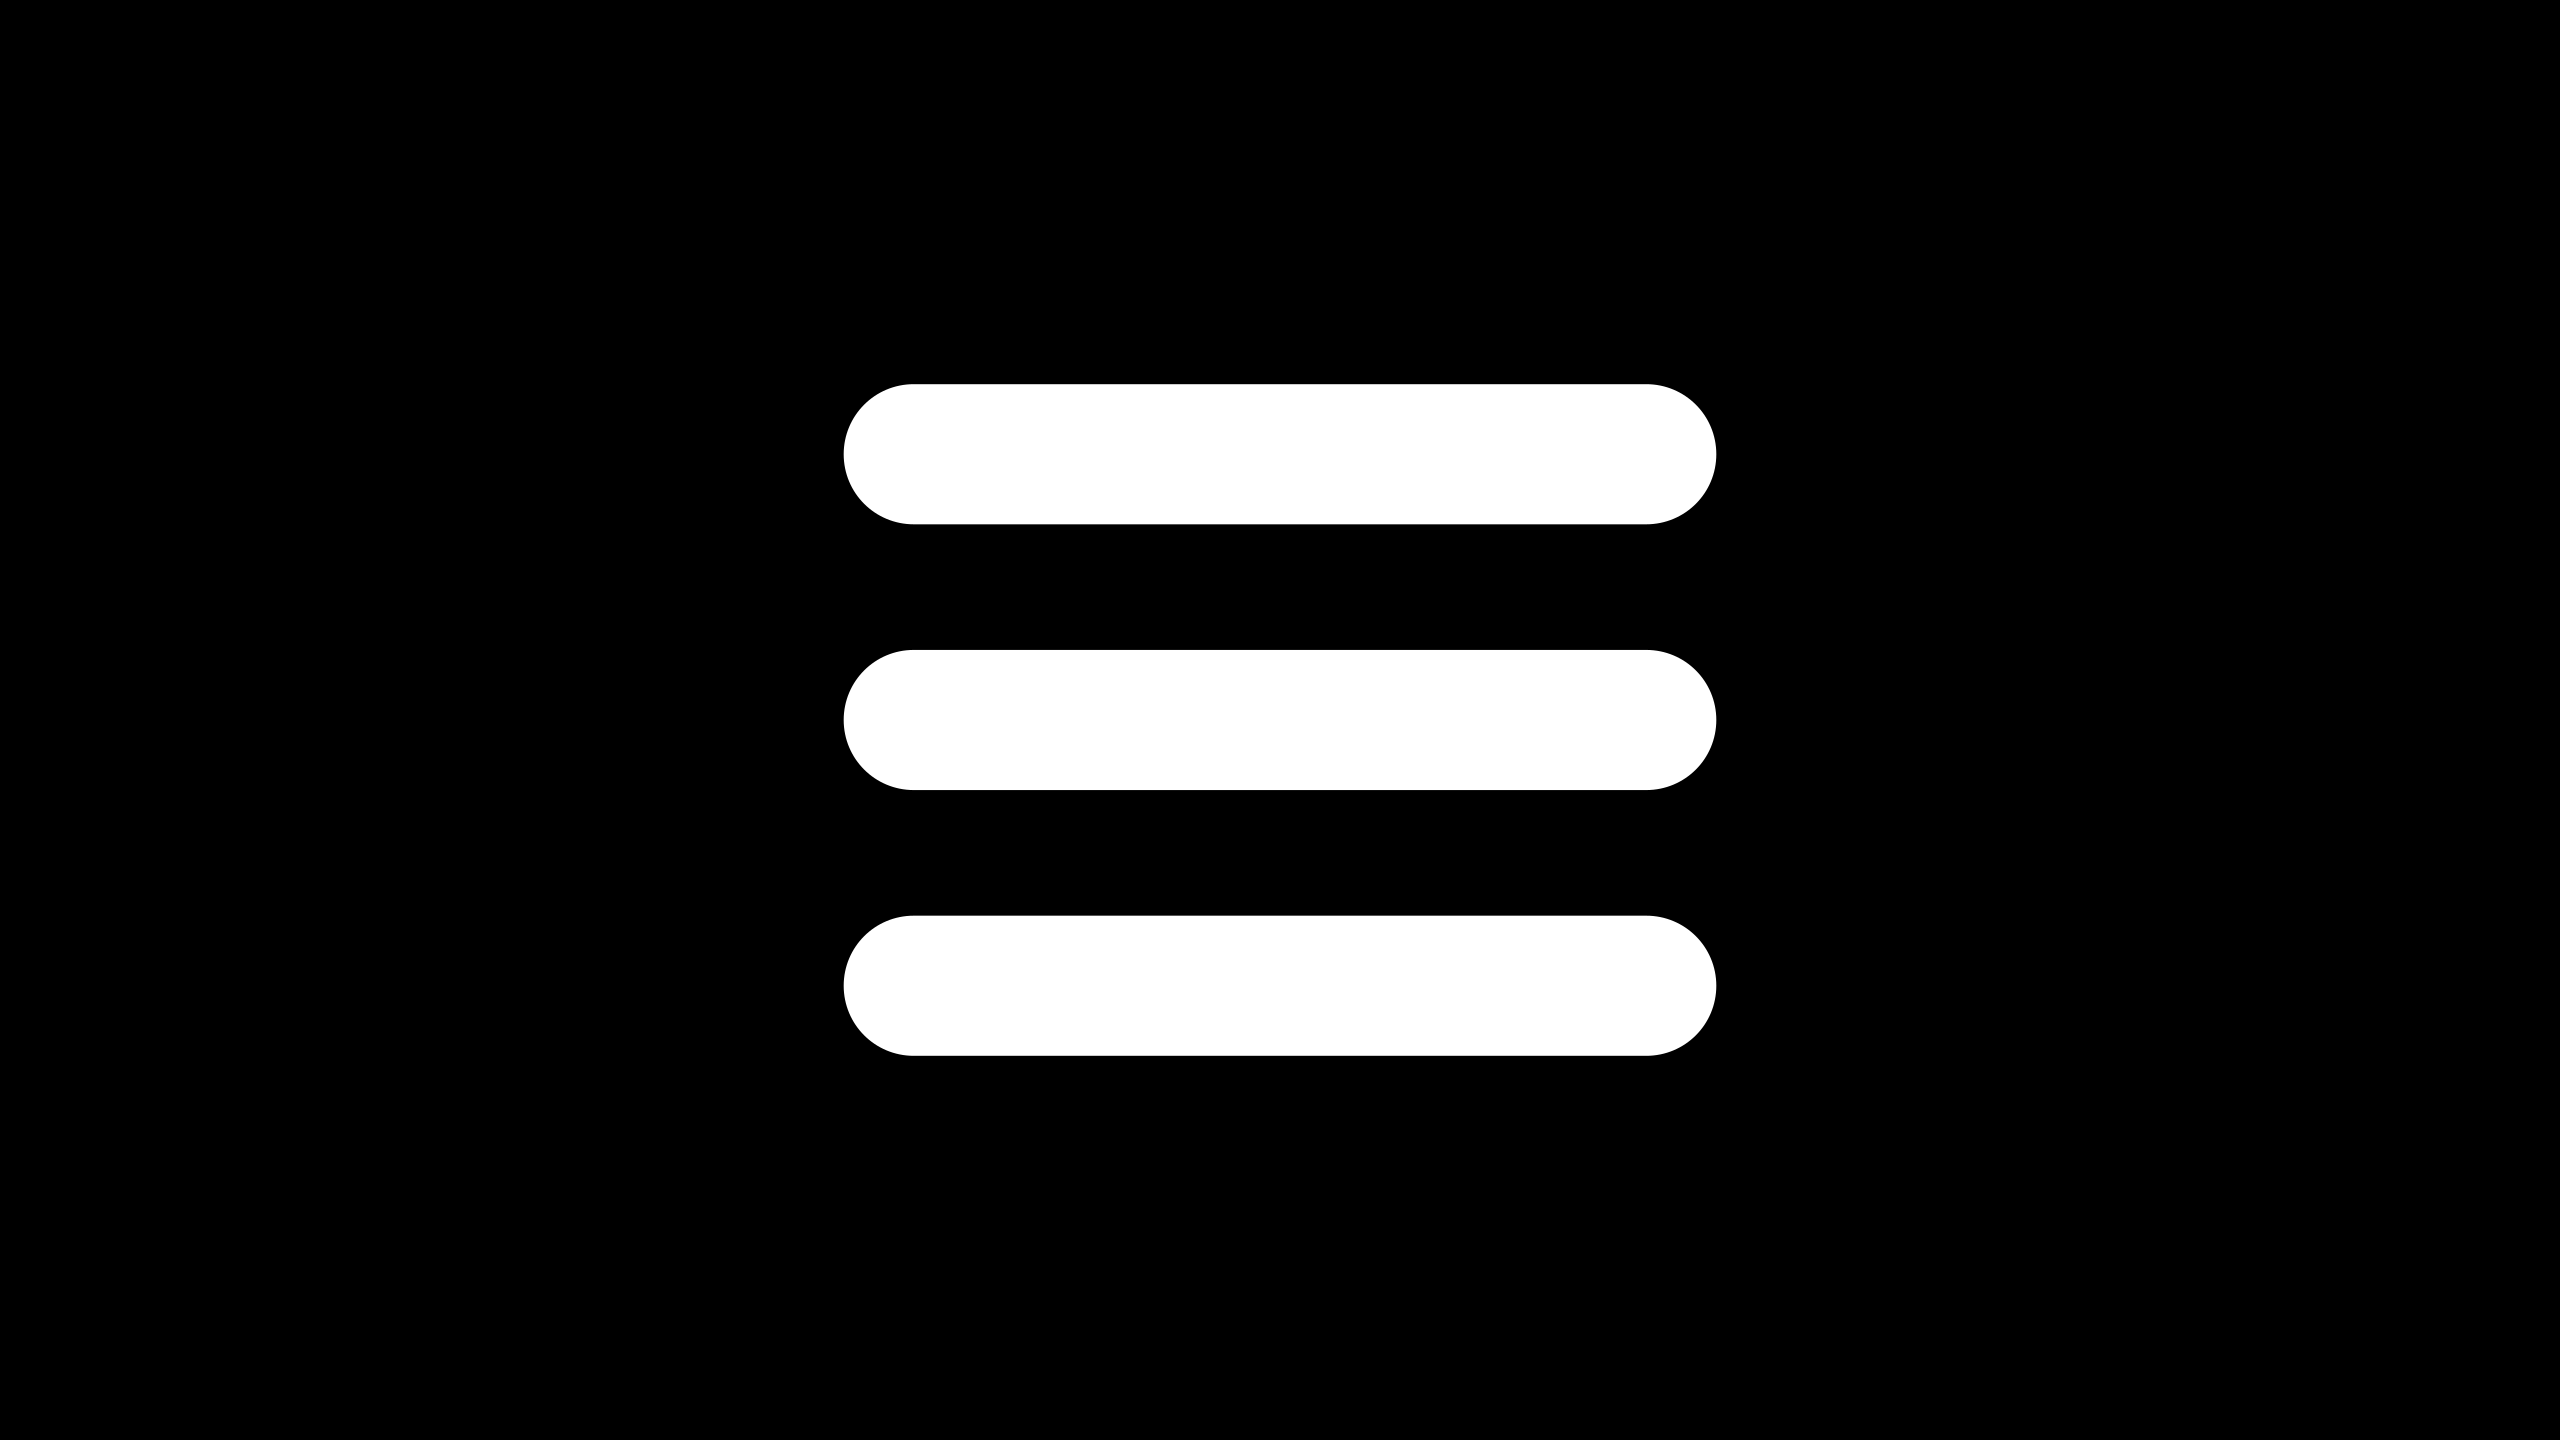 Creating an animated hamburger menu icon